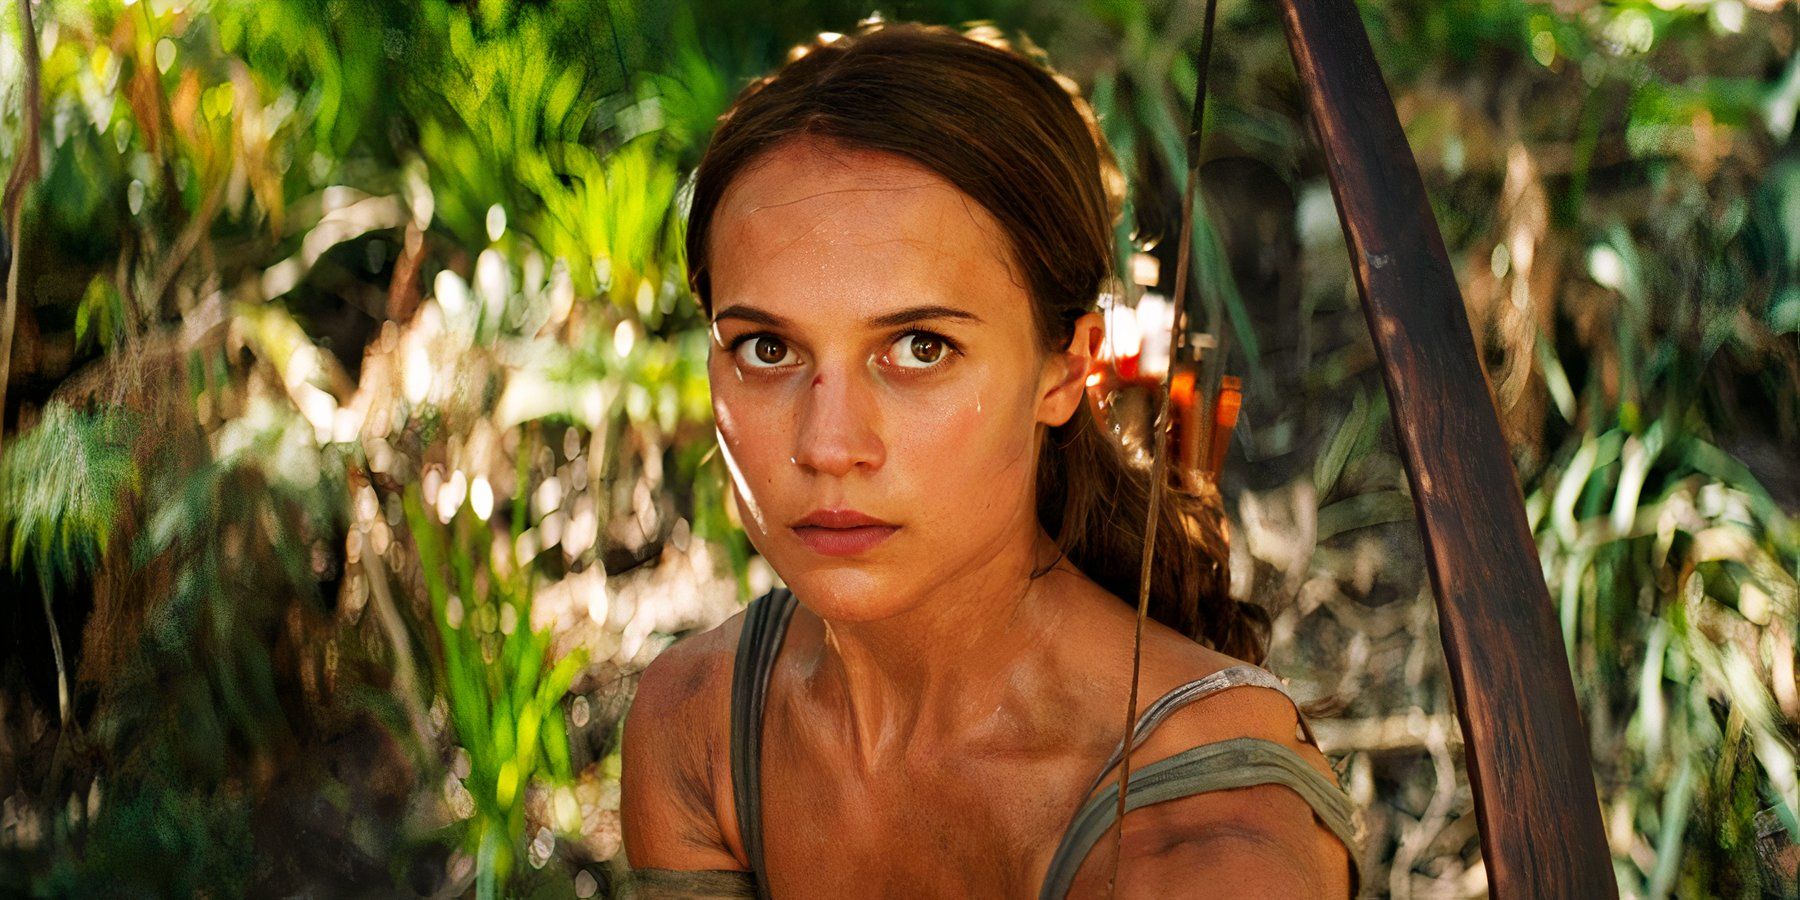 El ejecutivo de Amazon revela una prometedora actualización sobre producción y reparto del programa de televisión Tomb Raider